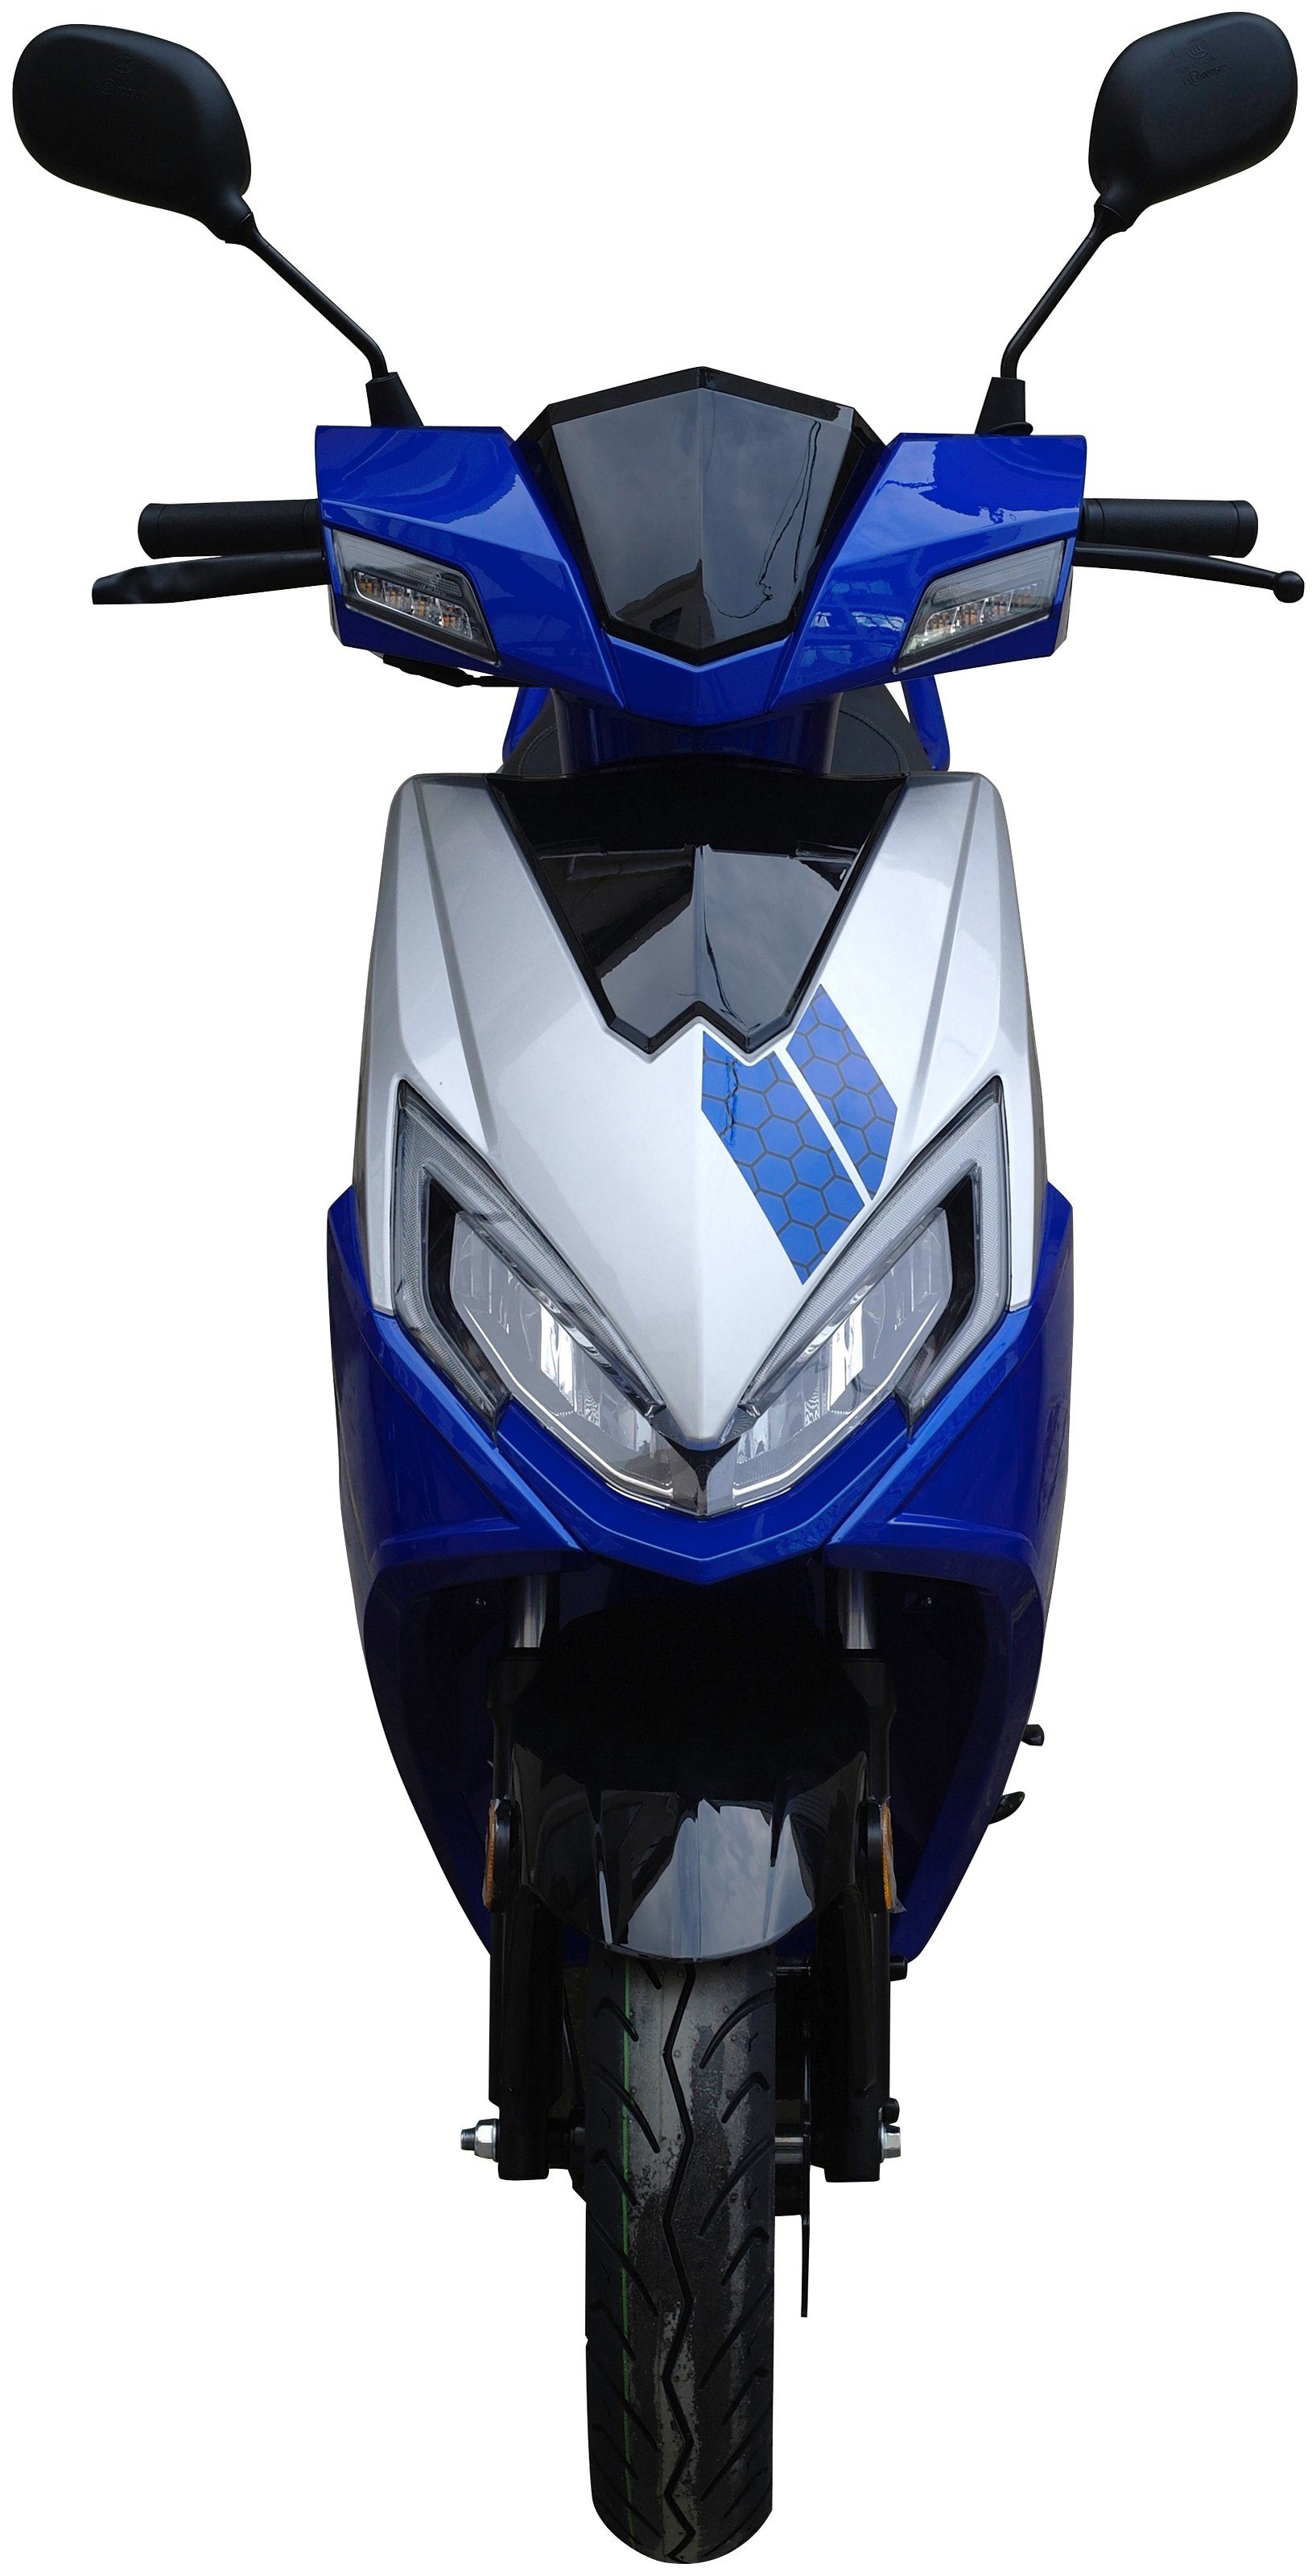 50 UNION 50-45, Sonic blau 5 Euro 45 ccm, km/h, GT Motorroller X